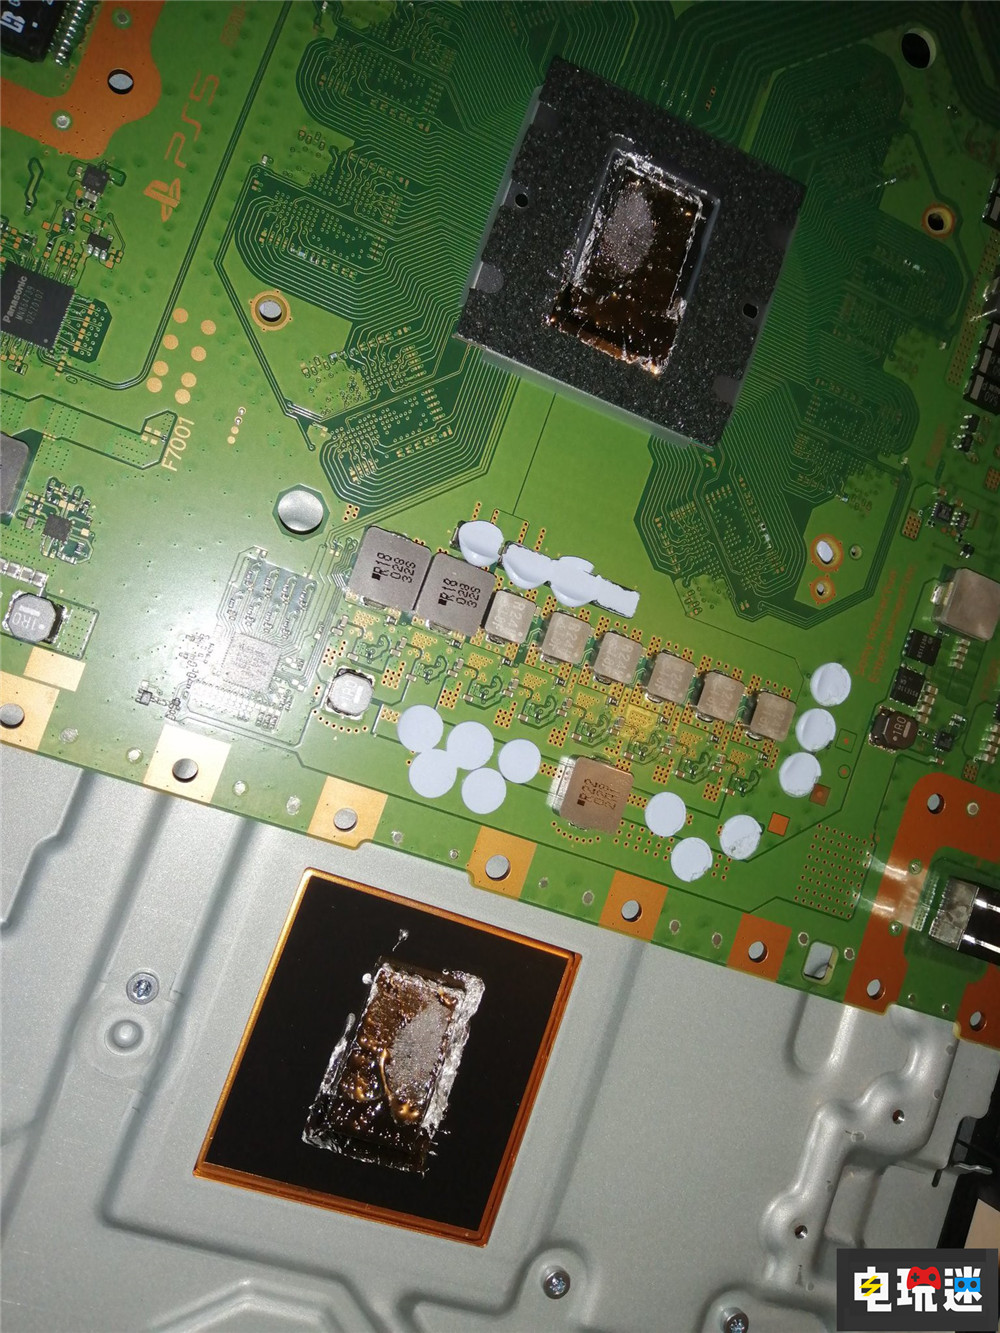 维修商称PS5竖置会增加短路风险 主机 游戏机 散热 索尼 液金 PS5 索尼PS  第2张